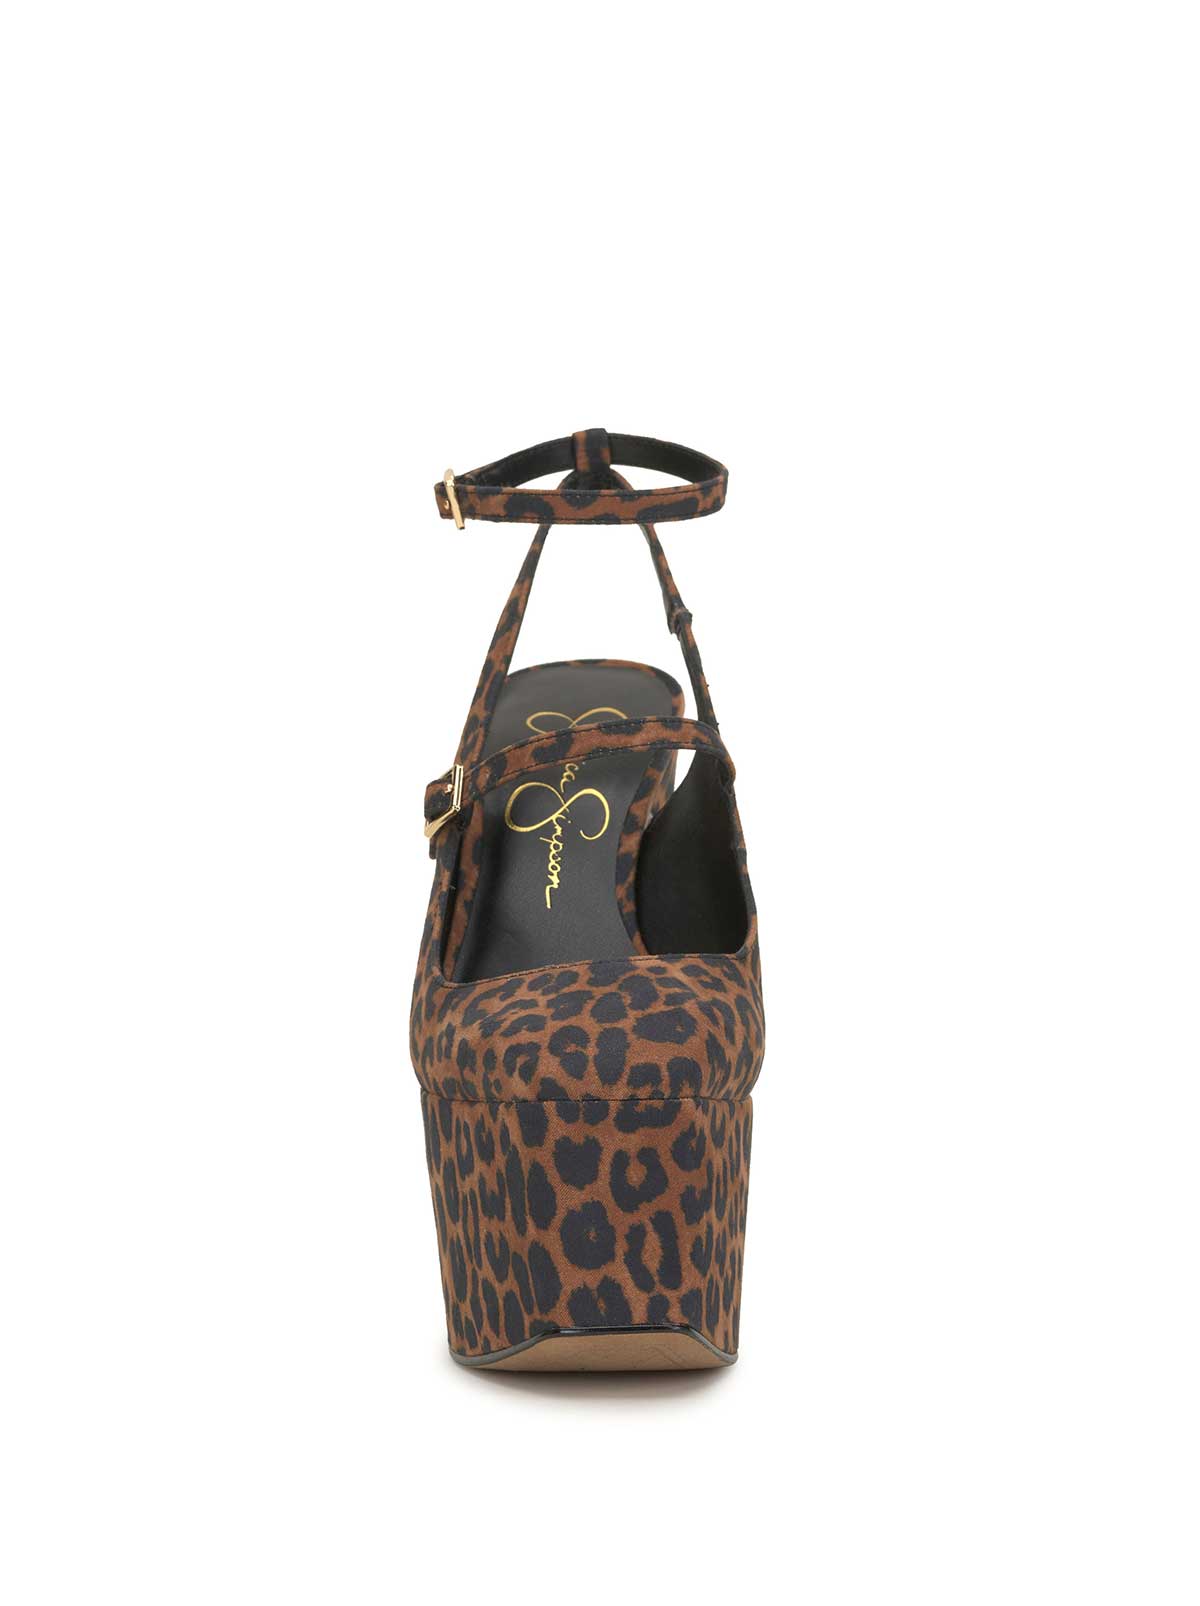 텺tan Jessica Simpson Faux Alligator Animal Print Purse Handbag Sachtel | Animal  print purses, Purses and handbags, Faux alligator